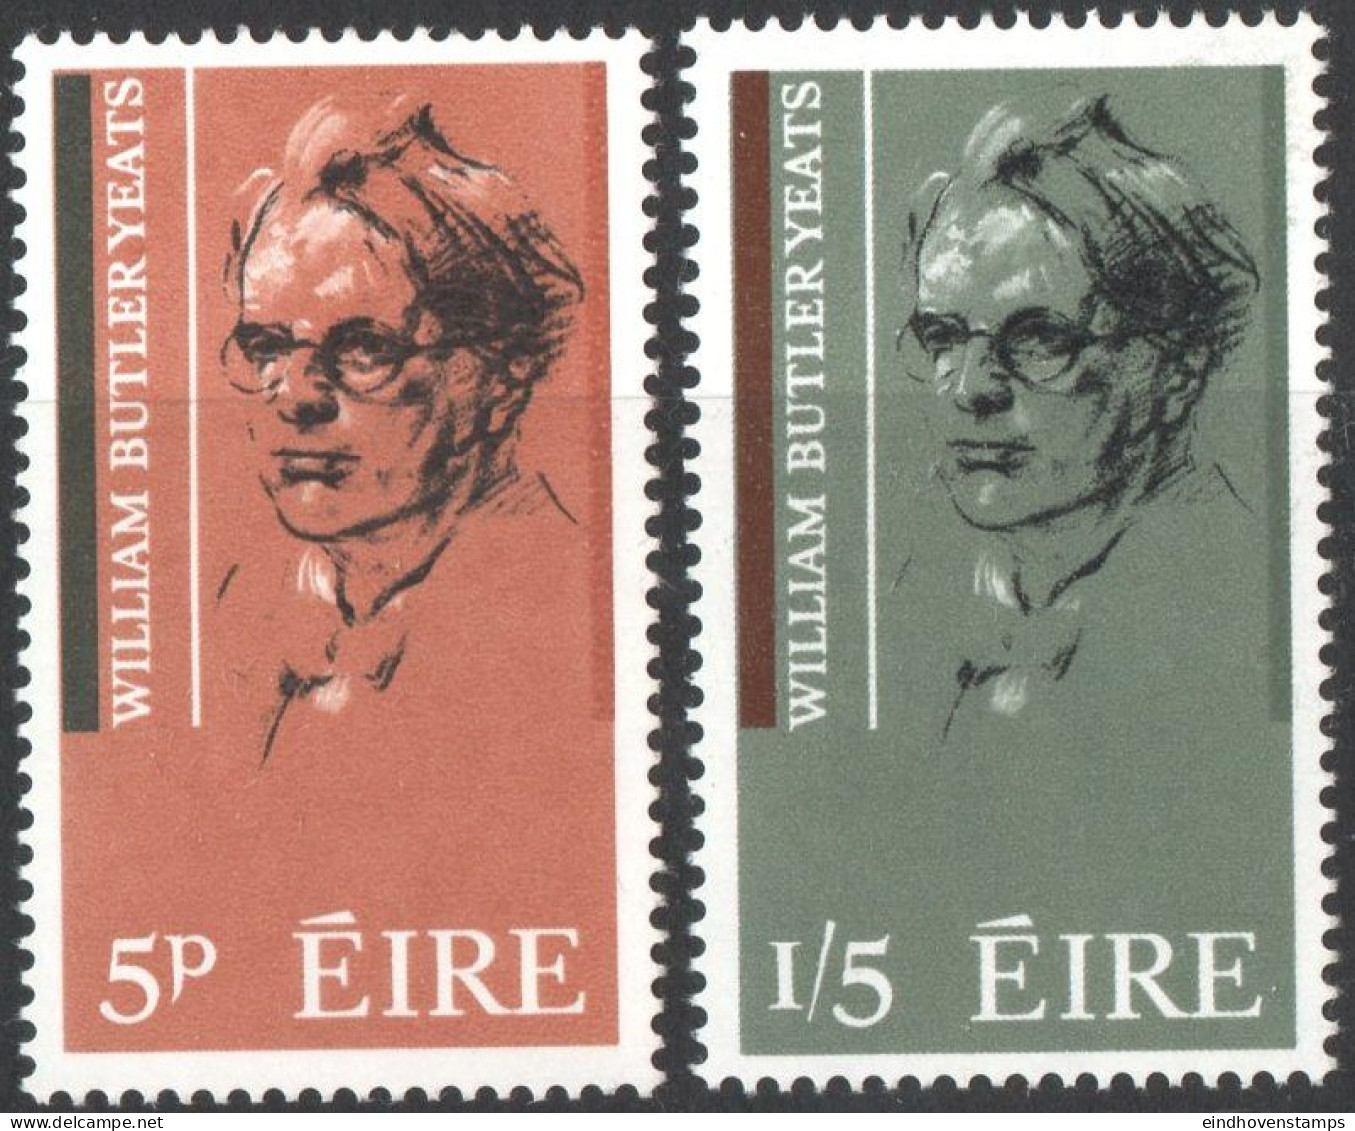 Eire 1965 William Butler Yeats, Writer, 2 Values MNH Ireland Portrait By Sean O'Sullivan - Schrijvers